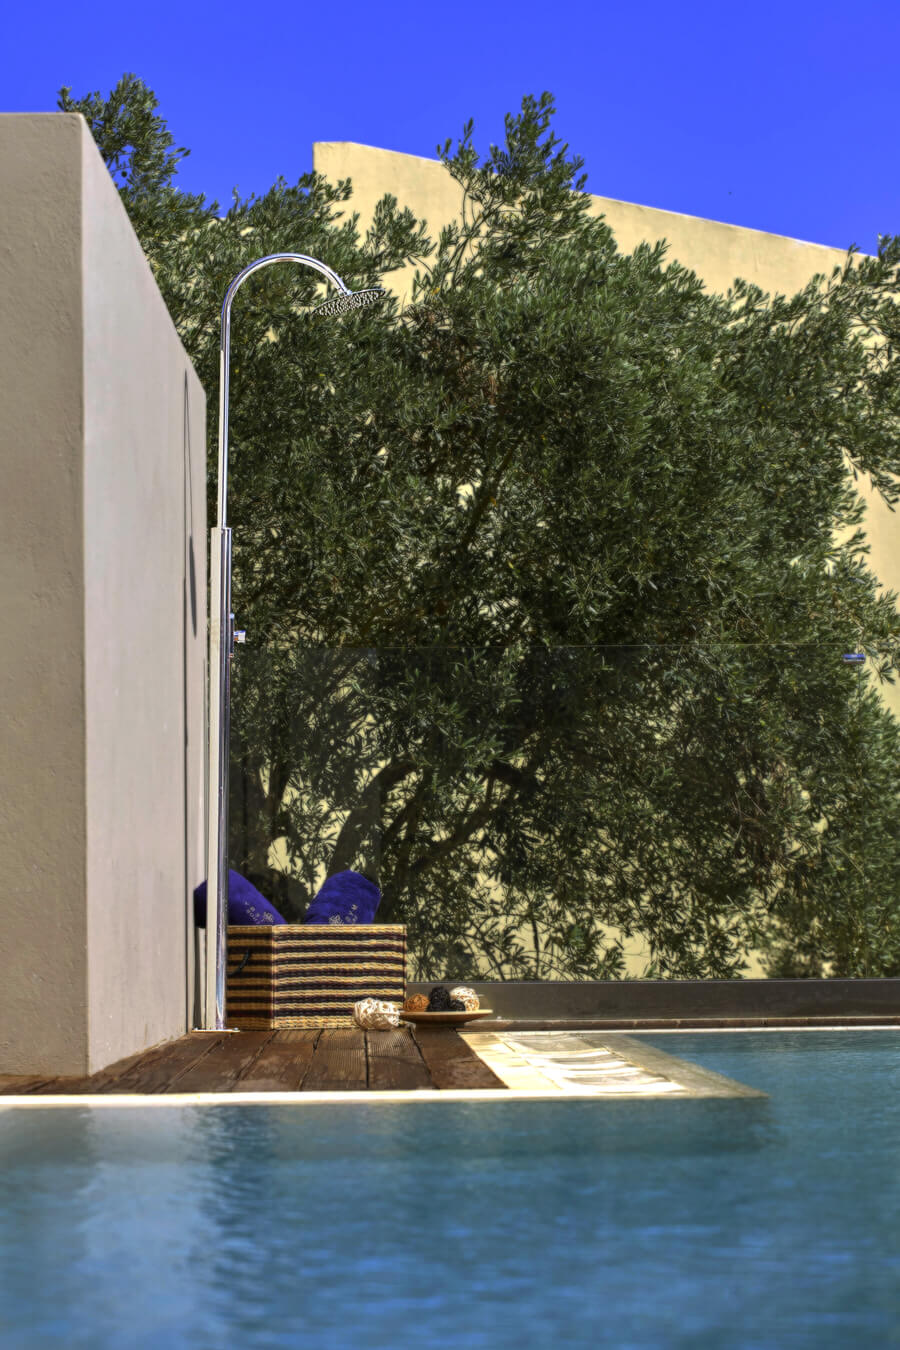 Giove nerezová sprcha z leštěného nerezu umístěná na dřevěné podlaze u venkovního bazénu u rodinné vily v pozadí stromy